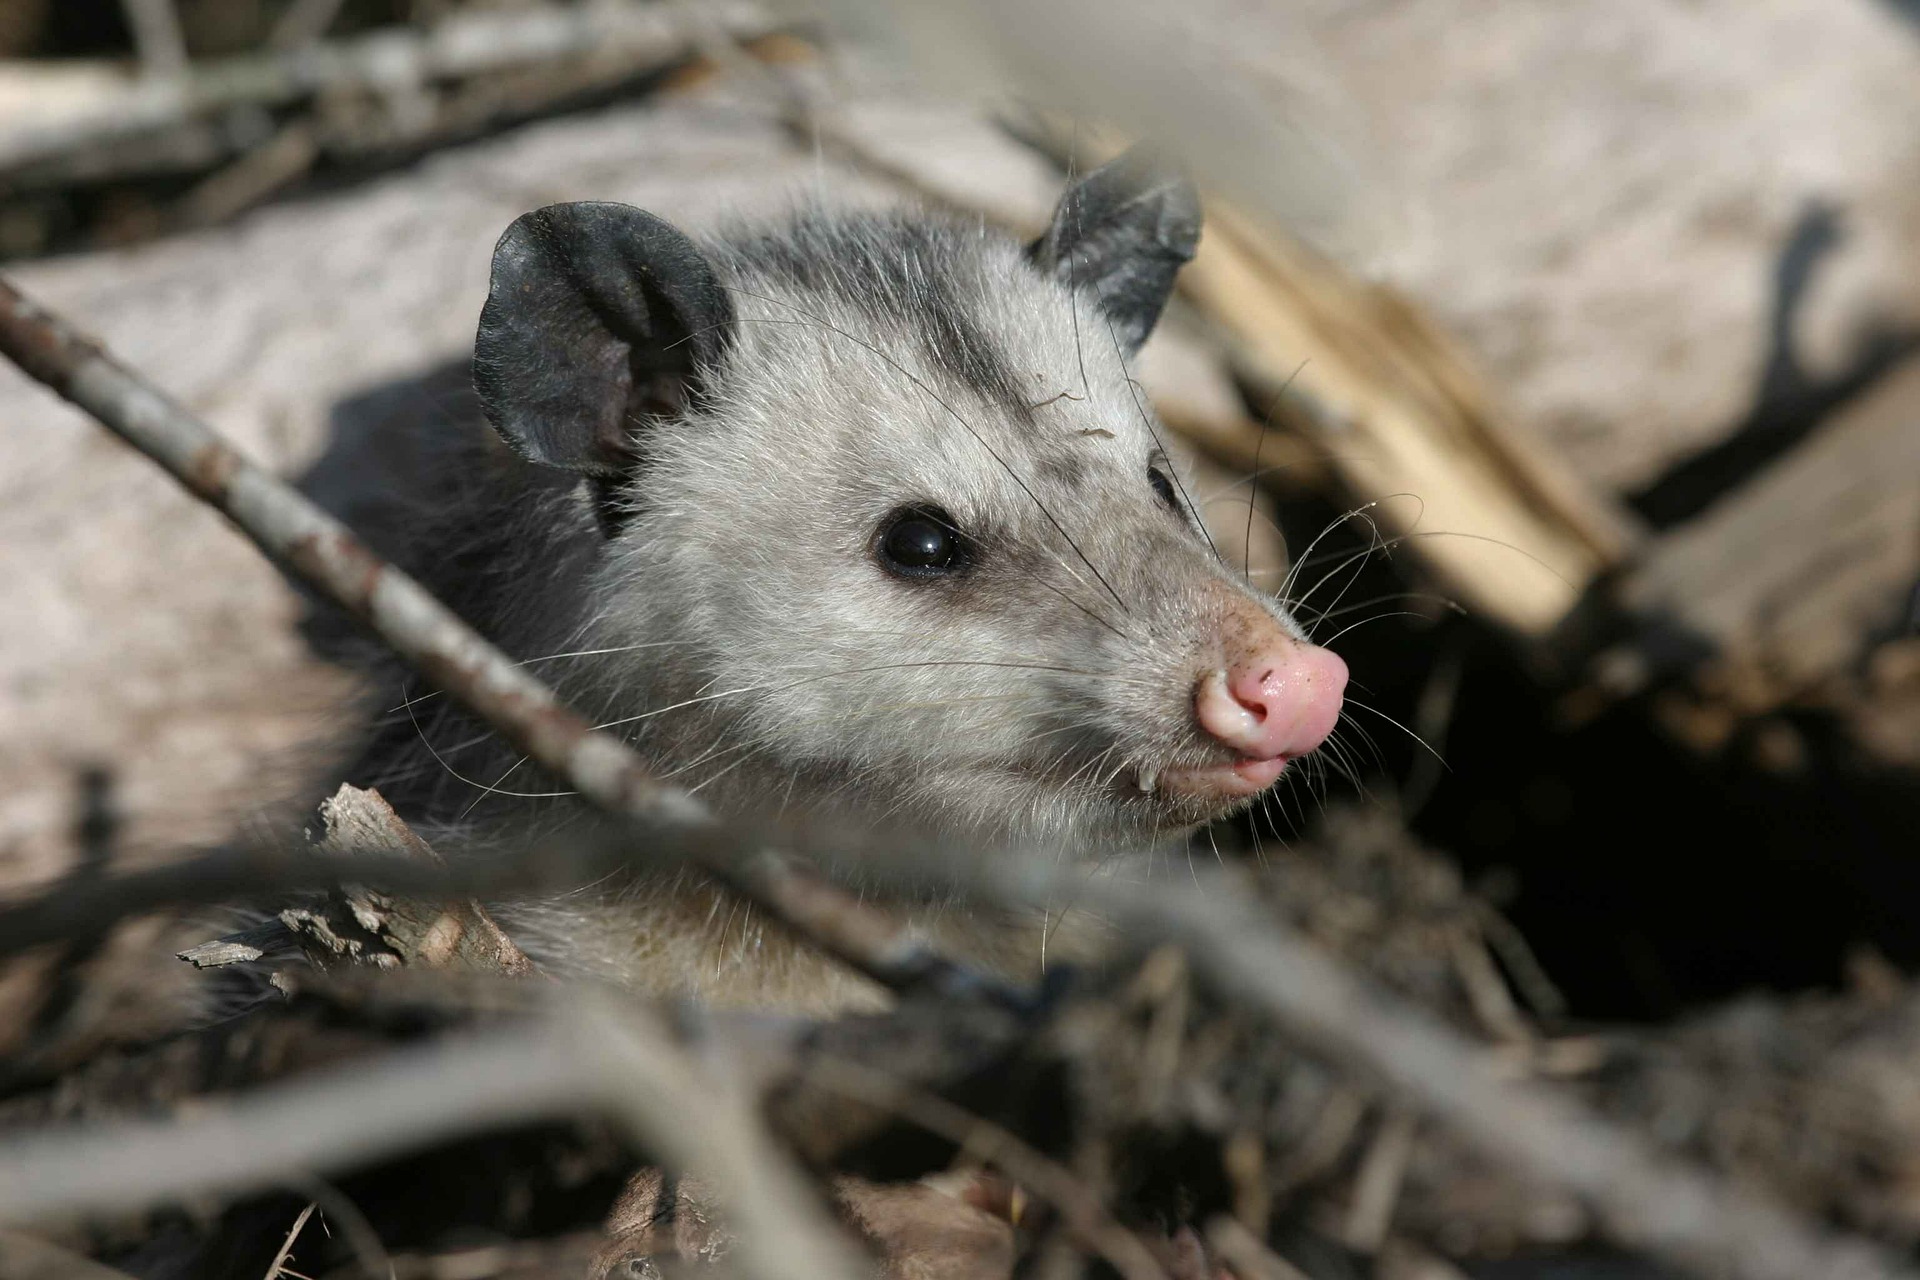 opossum!